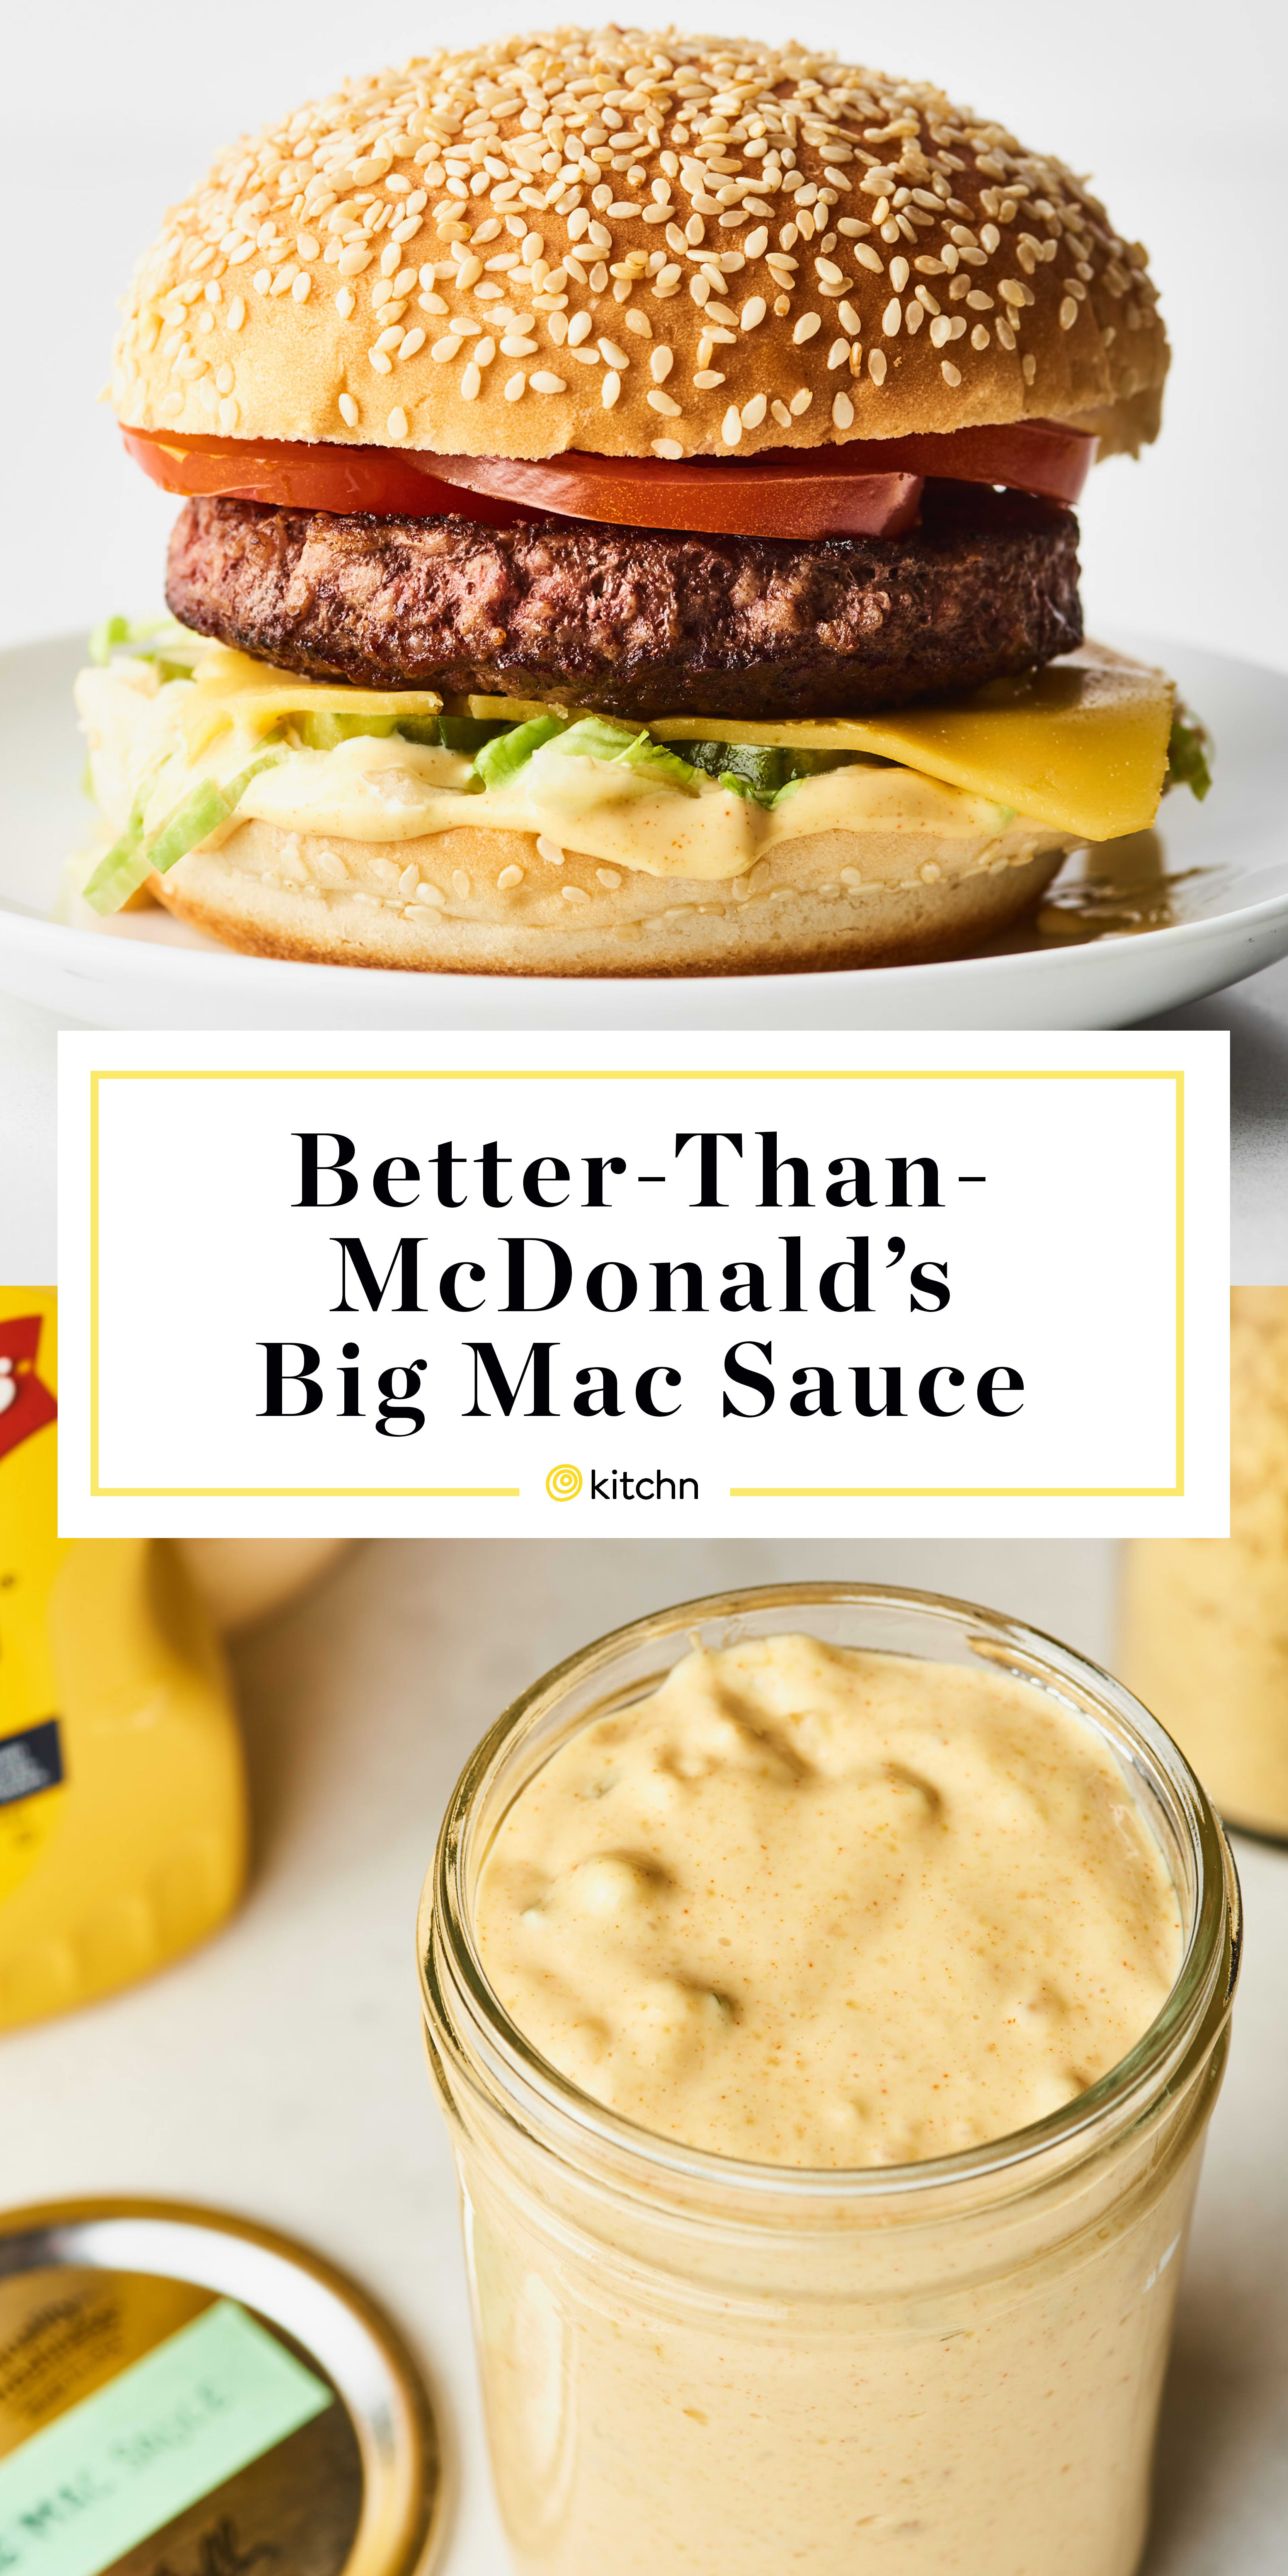 Better-than-McDonald’s Big Mac Sauce